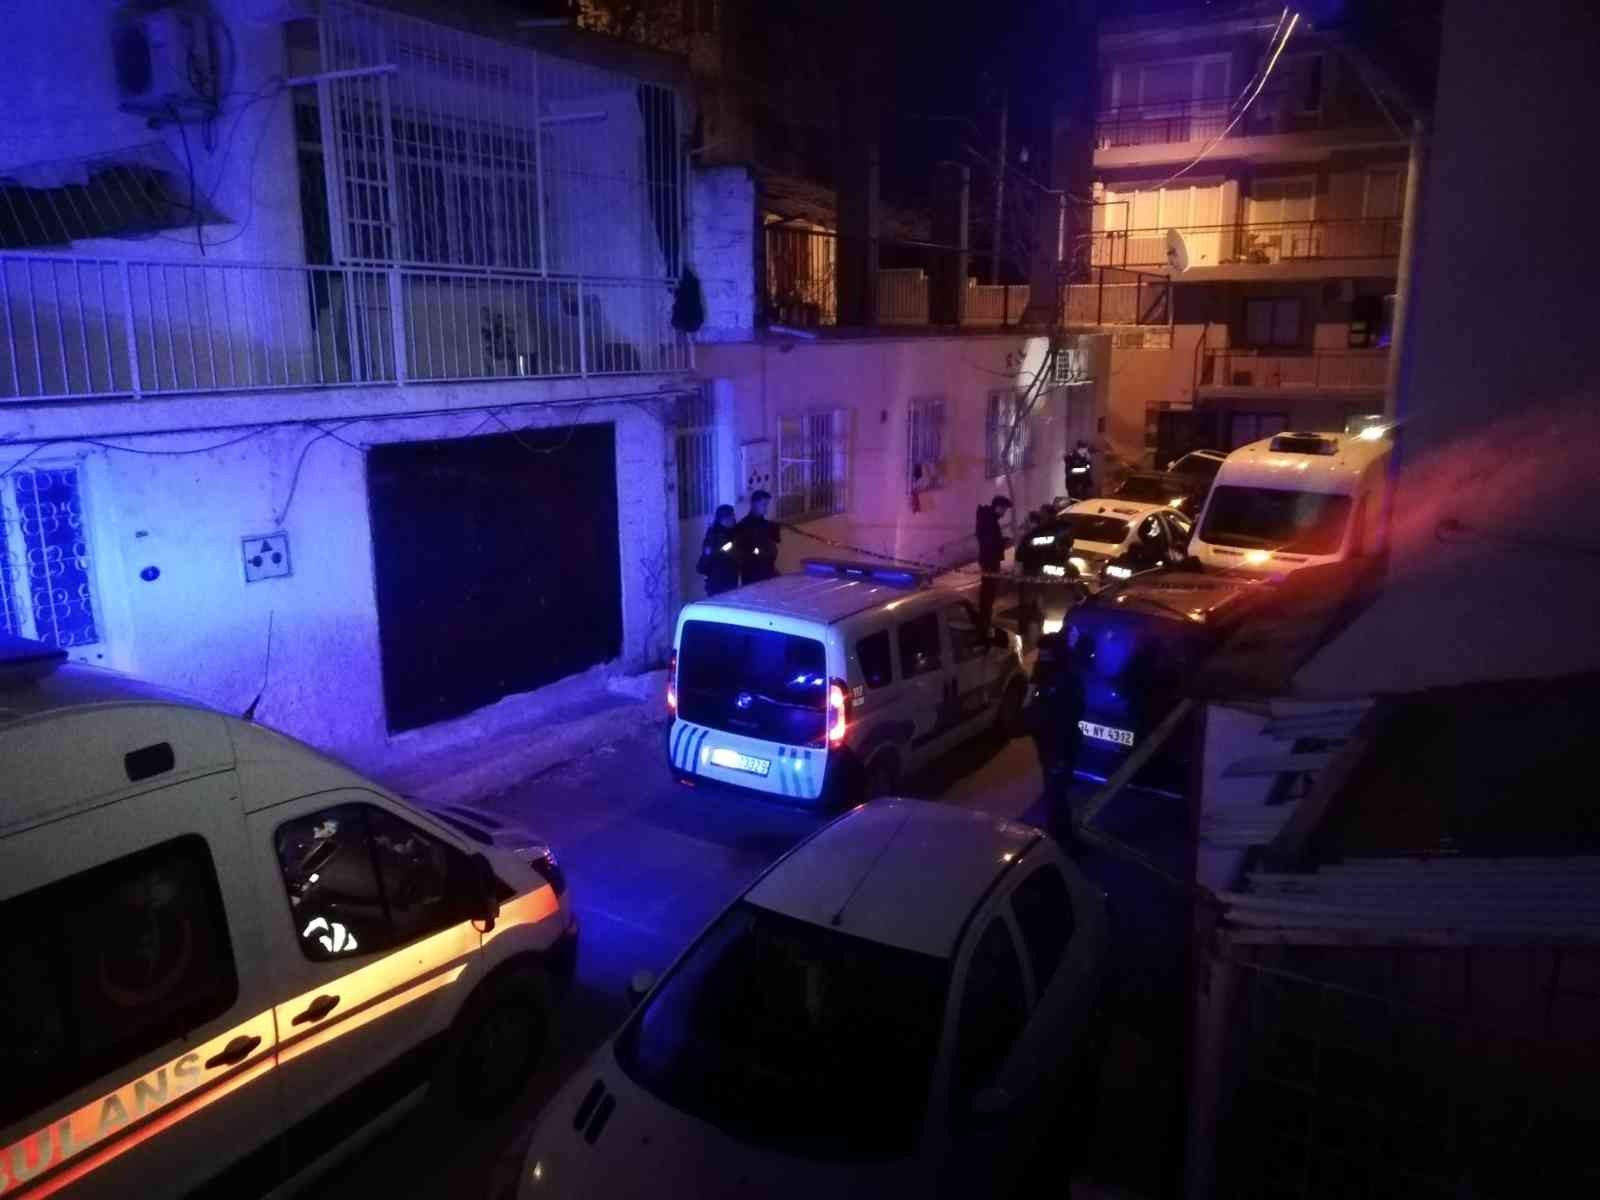 İzmir’de otomobil içinde ağzı ve yüzü bezle kapatılmış erkek cesedi bulundu #izmir